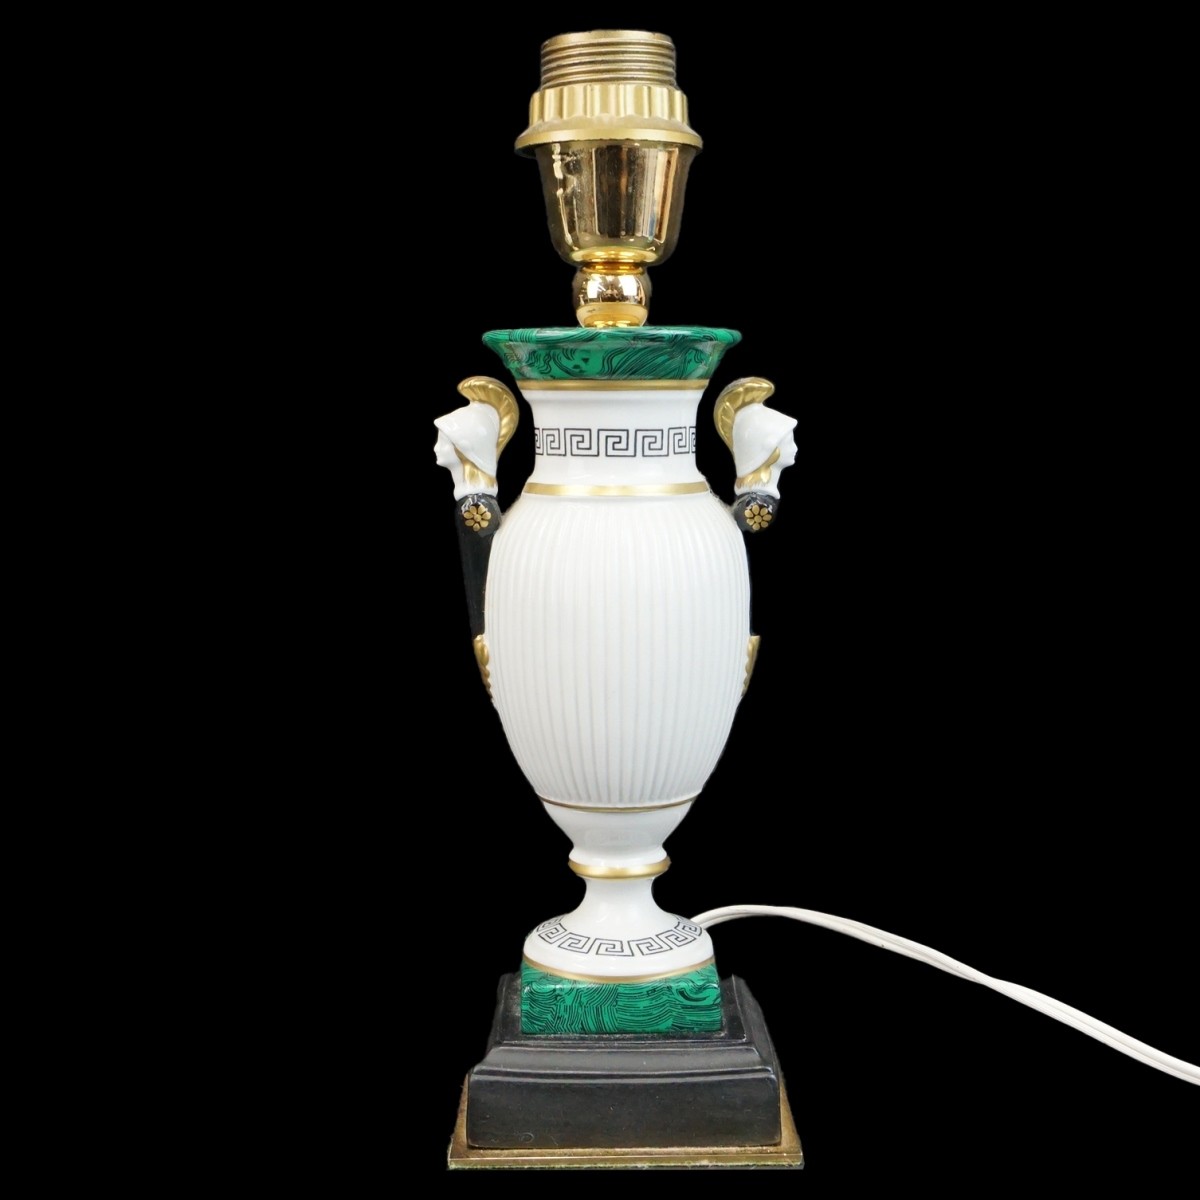 2Pcs Old Paris Porcelain Vase & Neoclassical Lamp